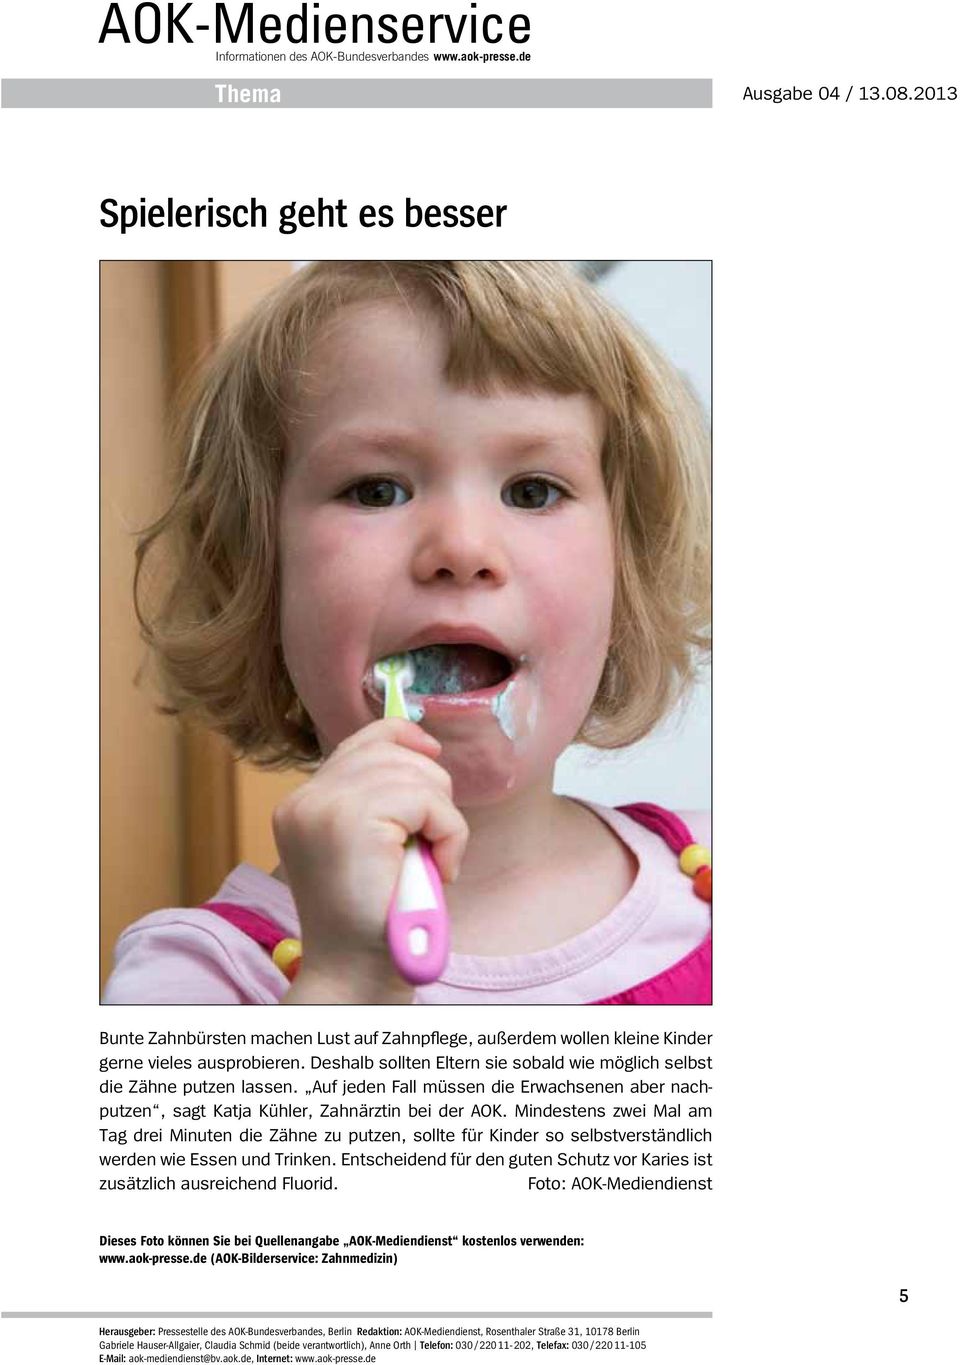 Auf jeden Fall müssen die Erwachsenen aber nachputzen, sagt Katja Kühler, Zahnärztin bei der AOK.